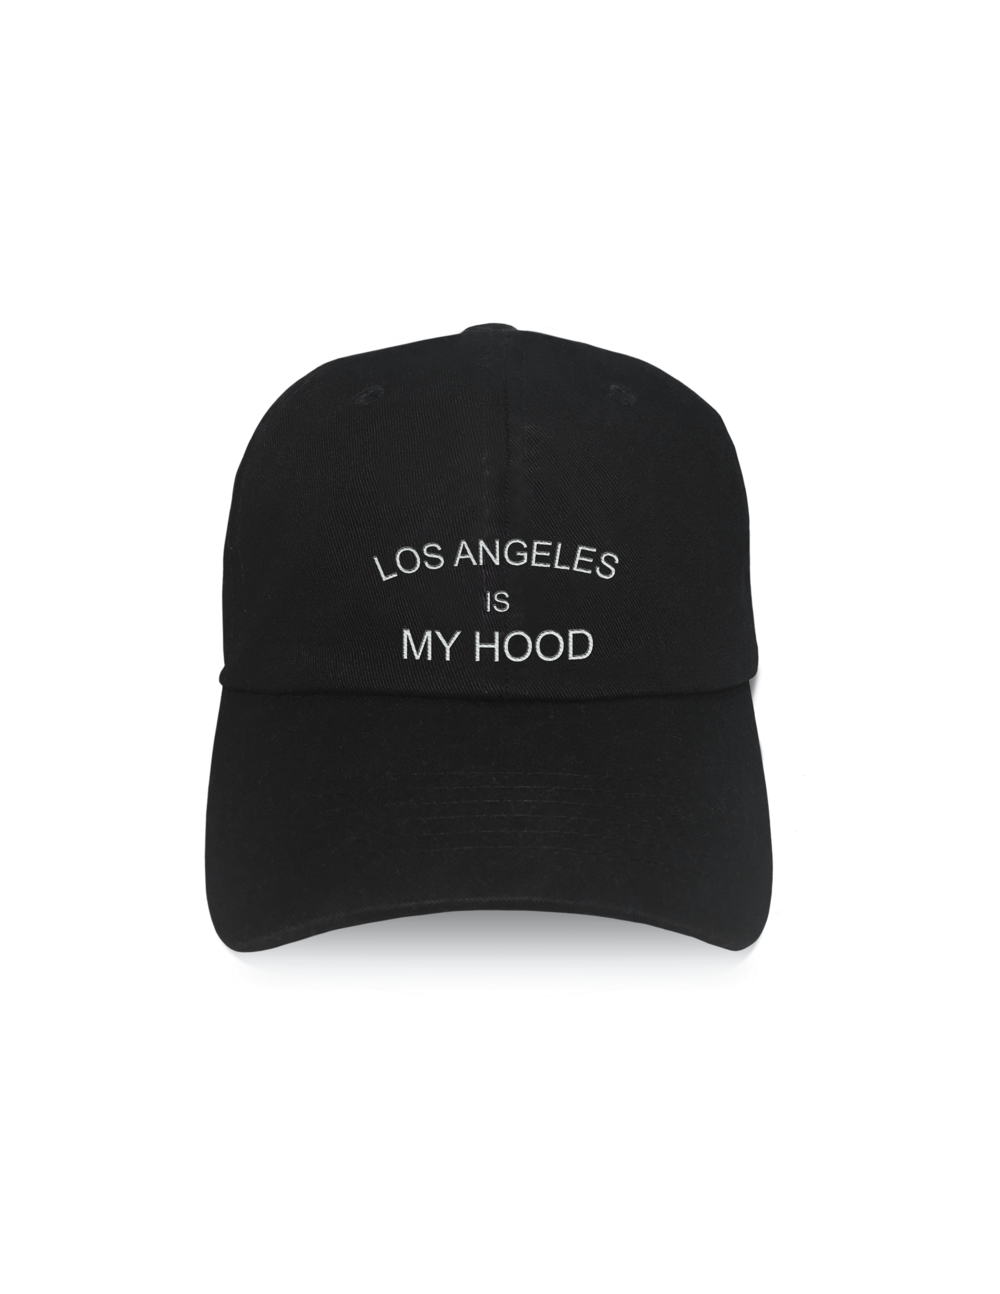 LA Is My Hood Baseball Cap